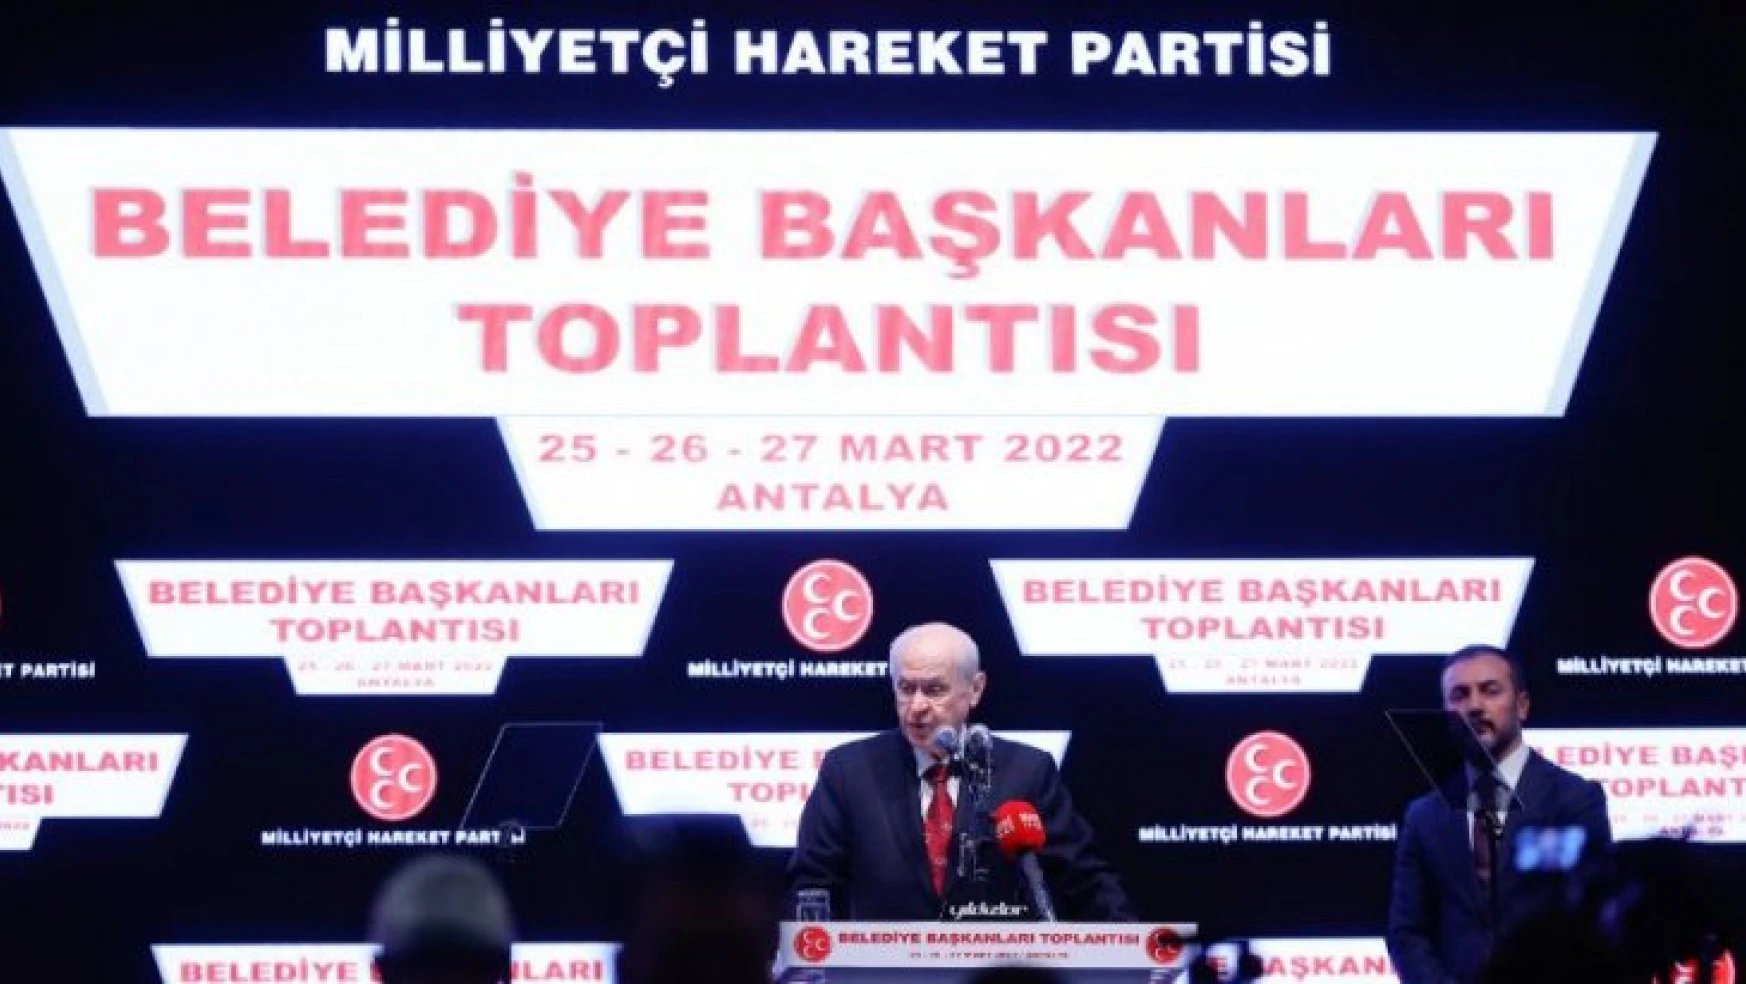 MHP Lideri Bahçeli Partisinin Belediye Başkanları Toplantısında önemli açıklamalarda bulundu